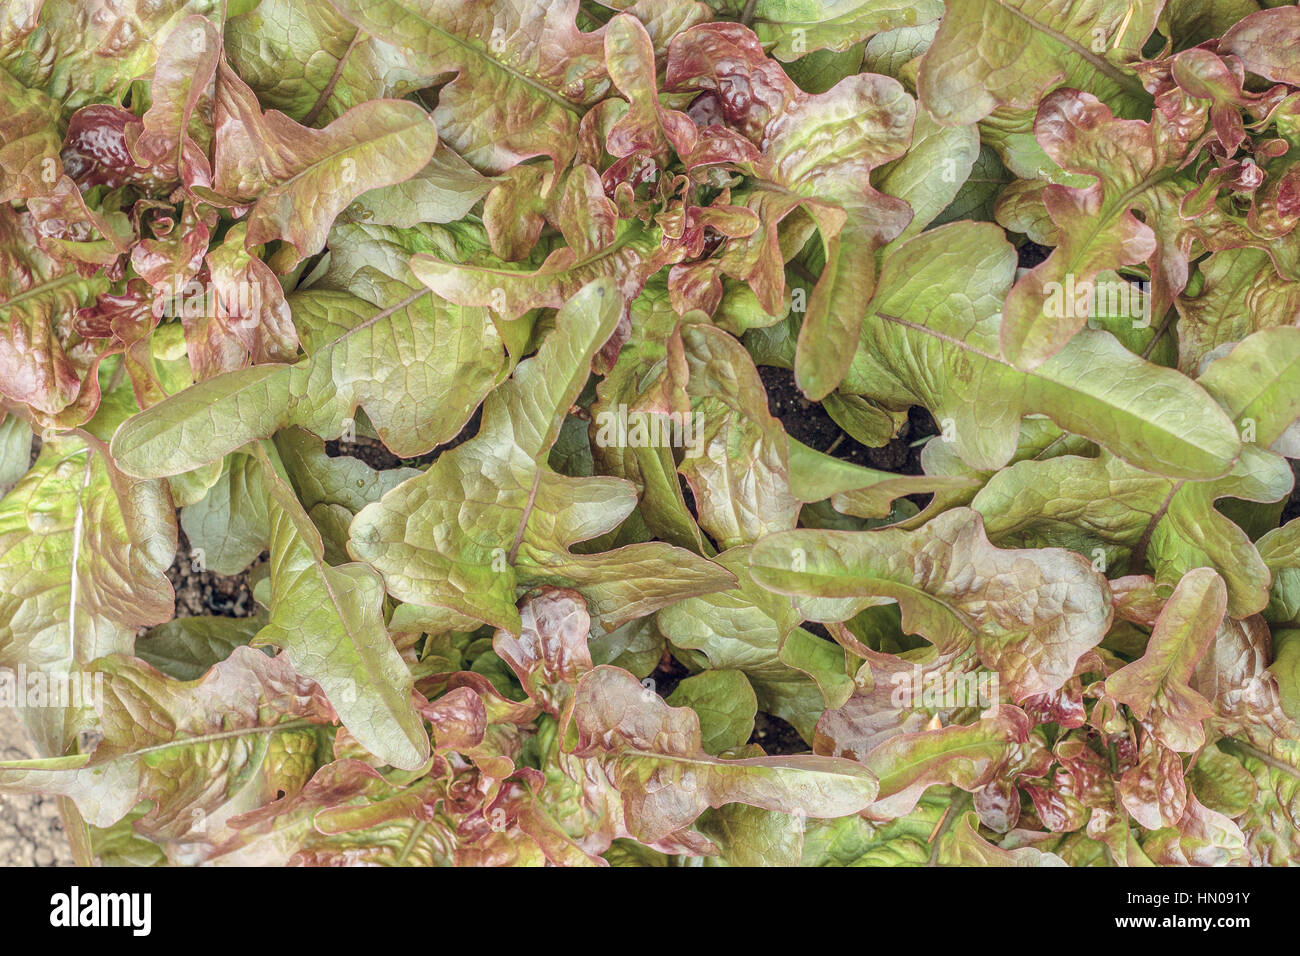 Les laitues feuille de chêne rouge ('Brunia' variété) cultiver un jardin à forte densité, en remplissant le cadre (vue de dessus). Banque D'Images